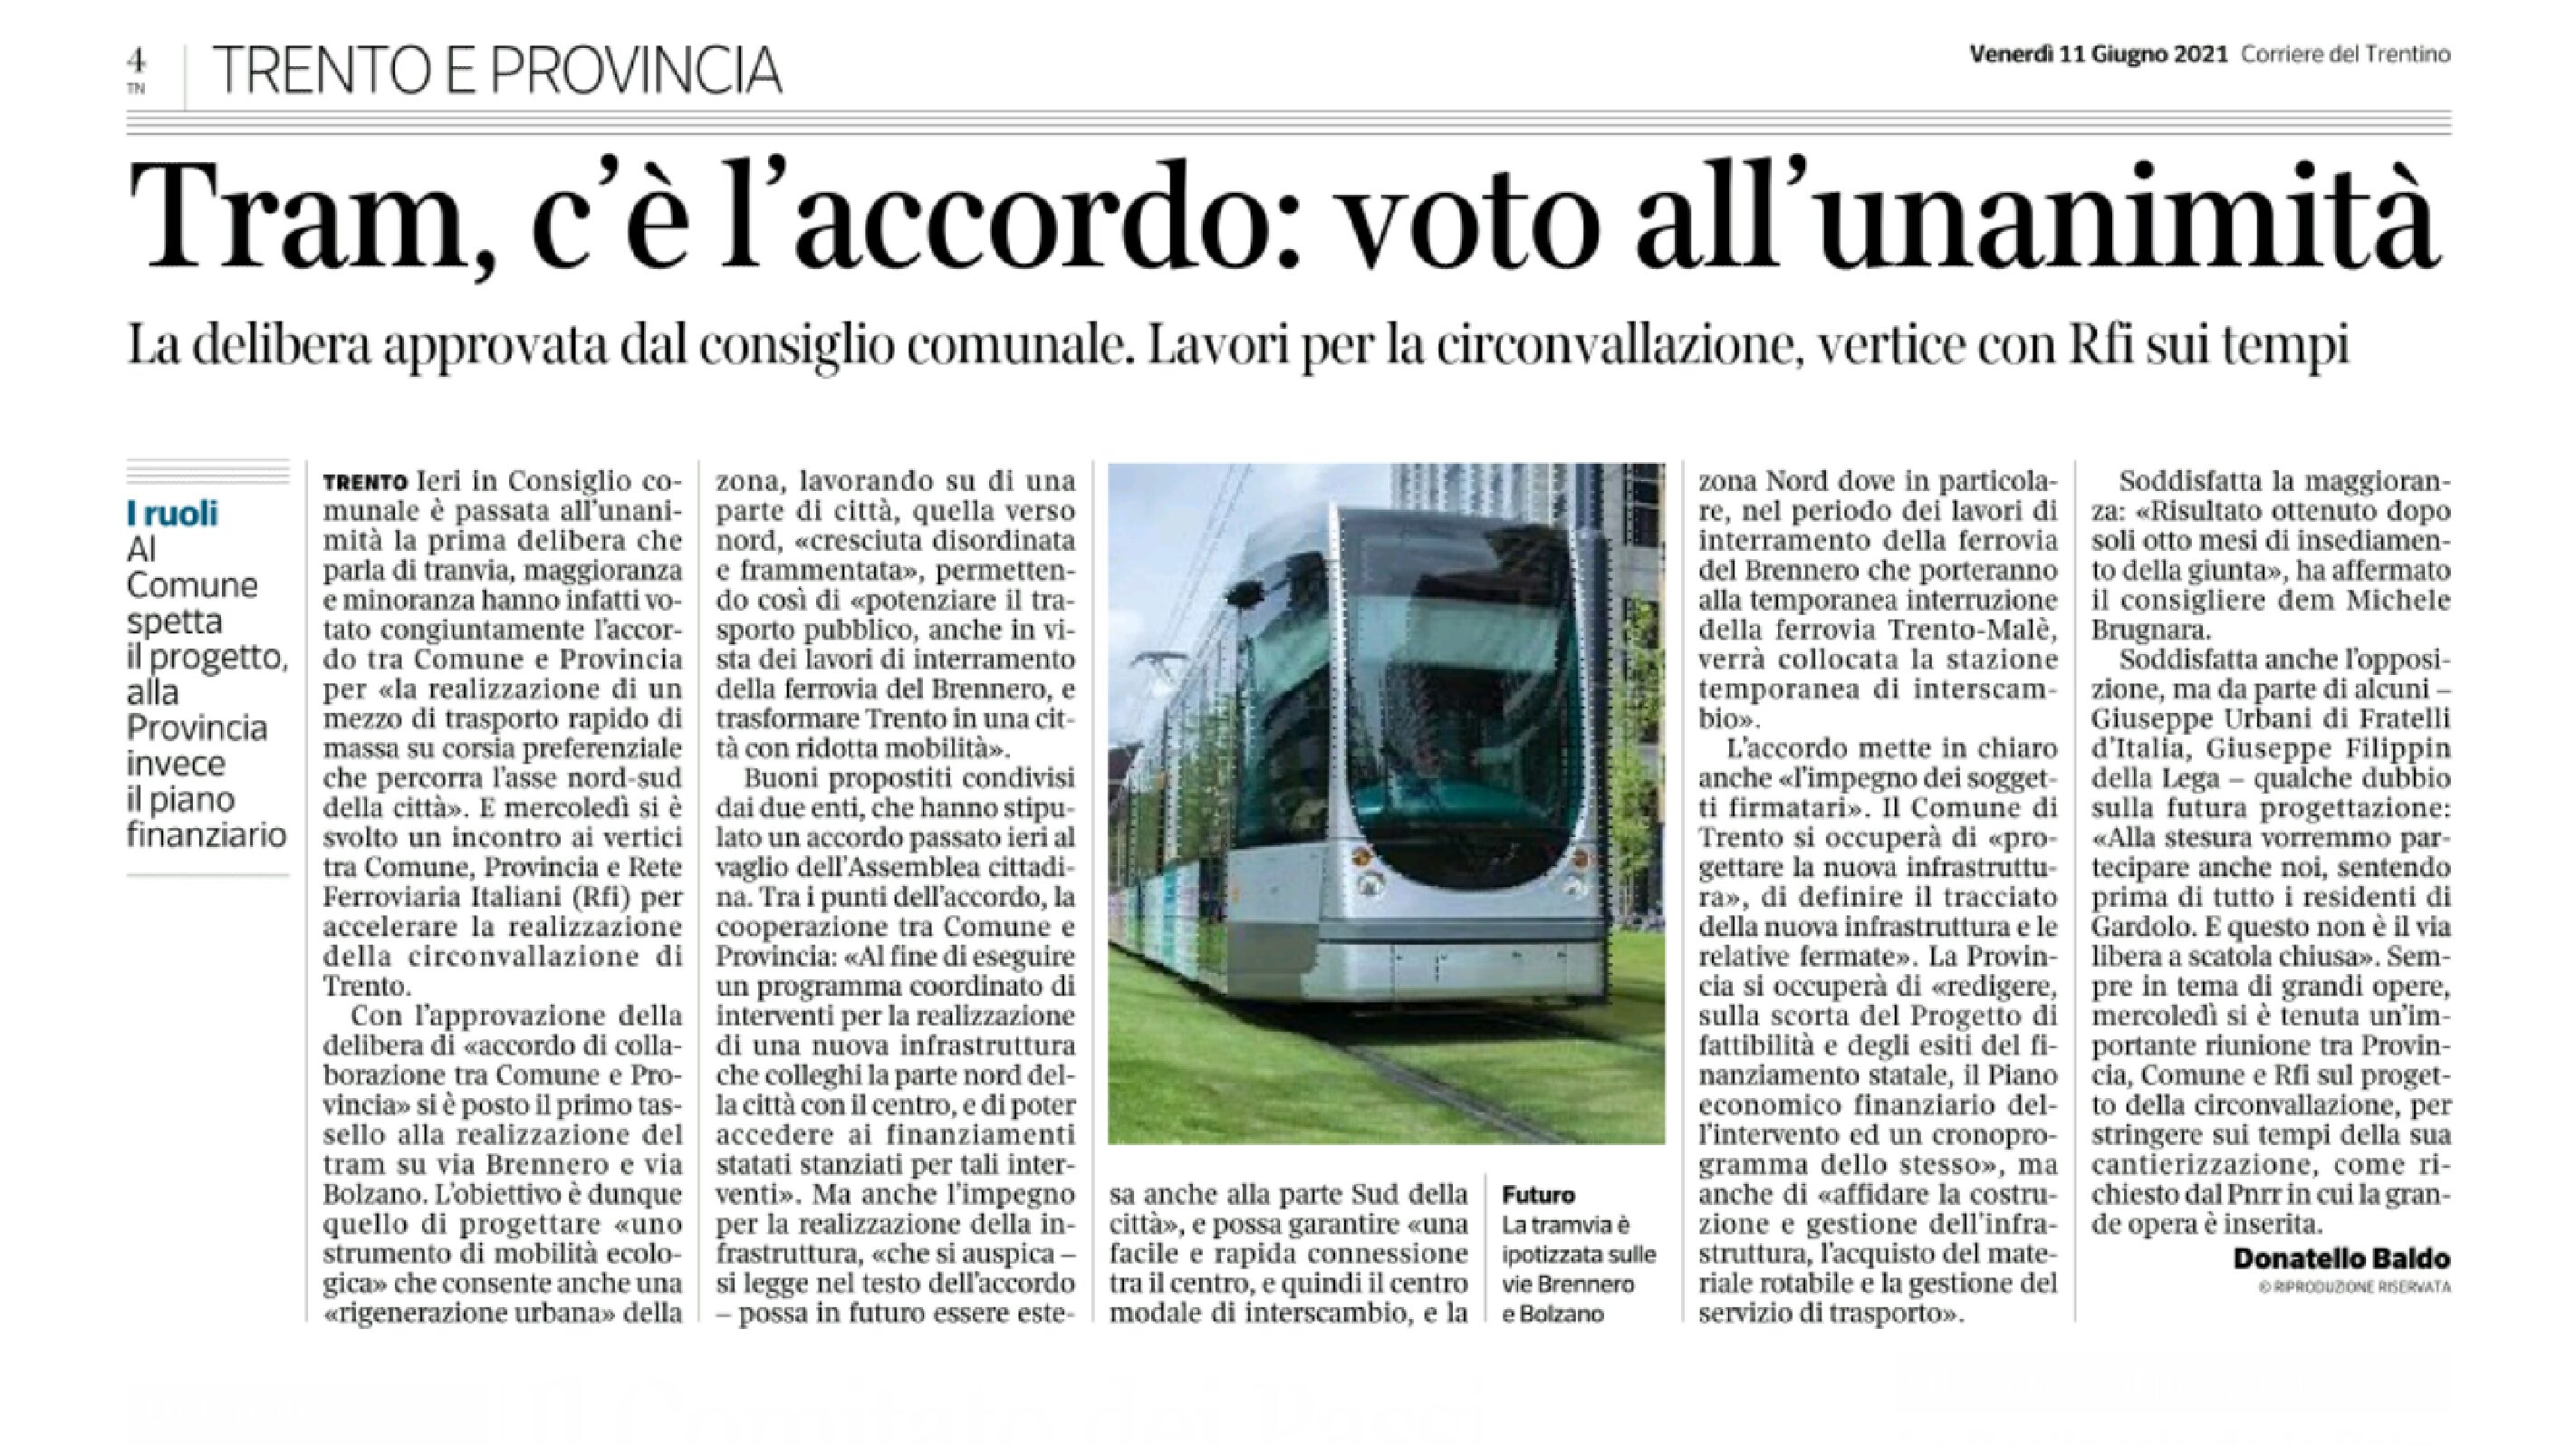 Trento: tram, c’è l’accordo. Voto all’unanimità